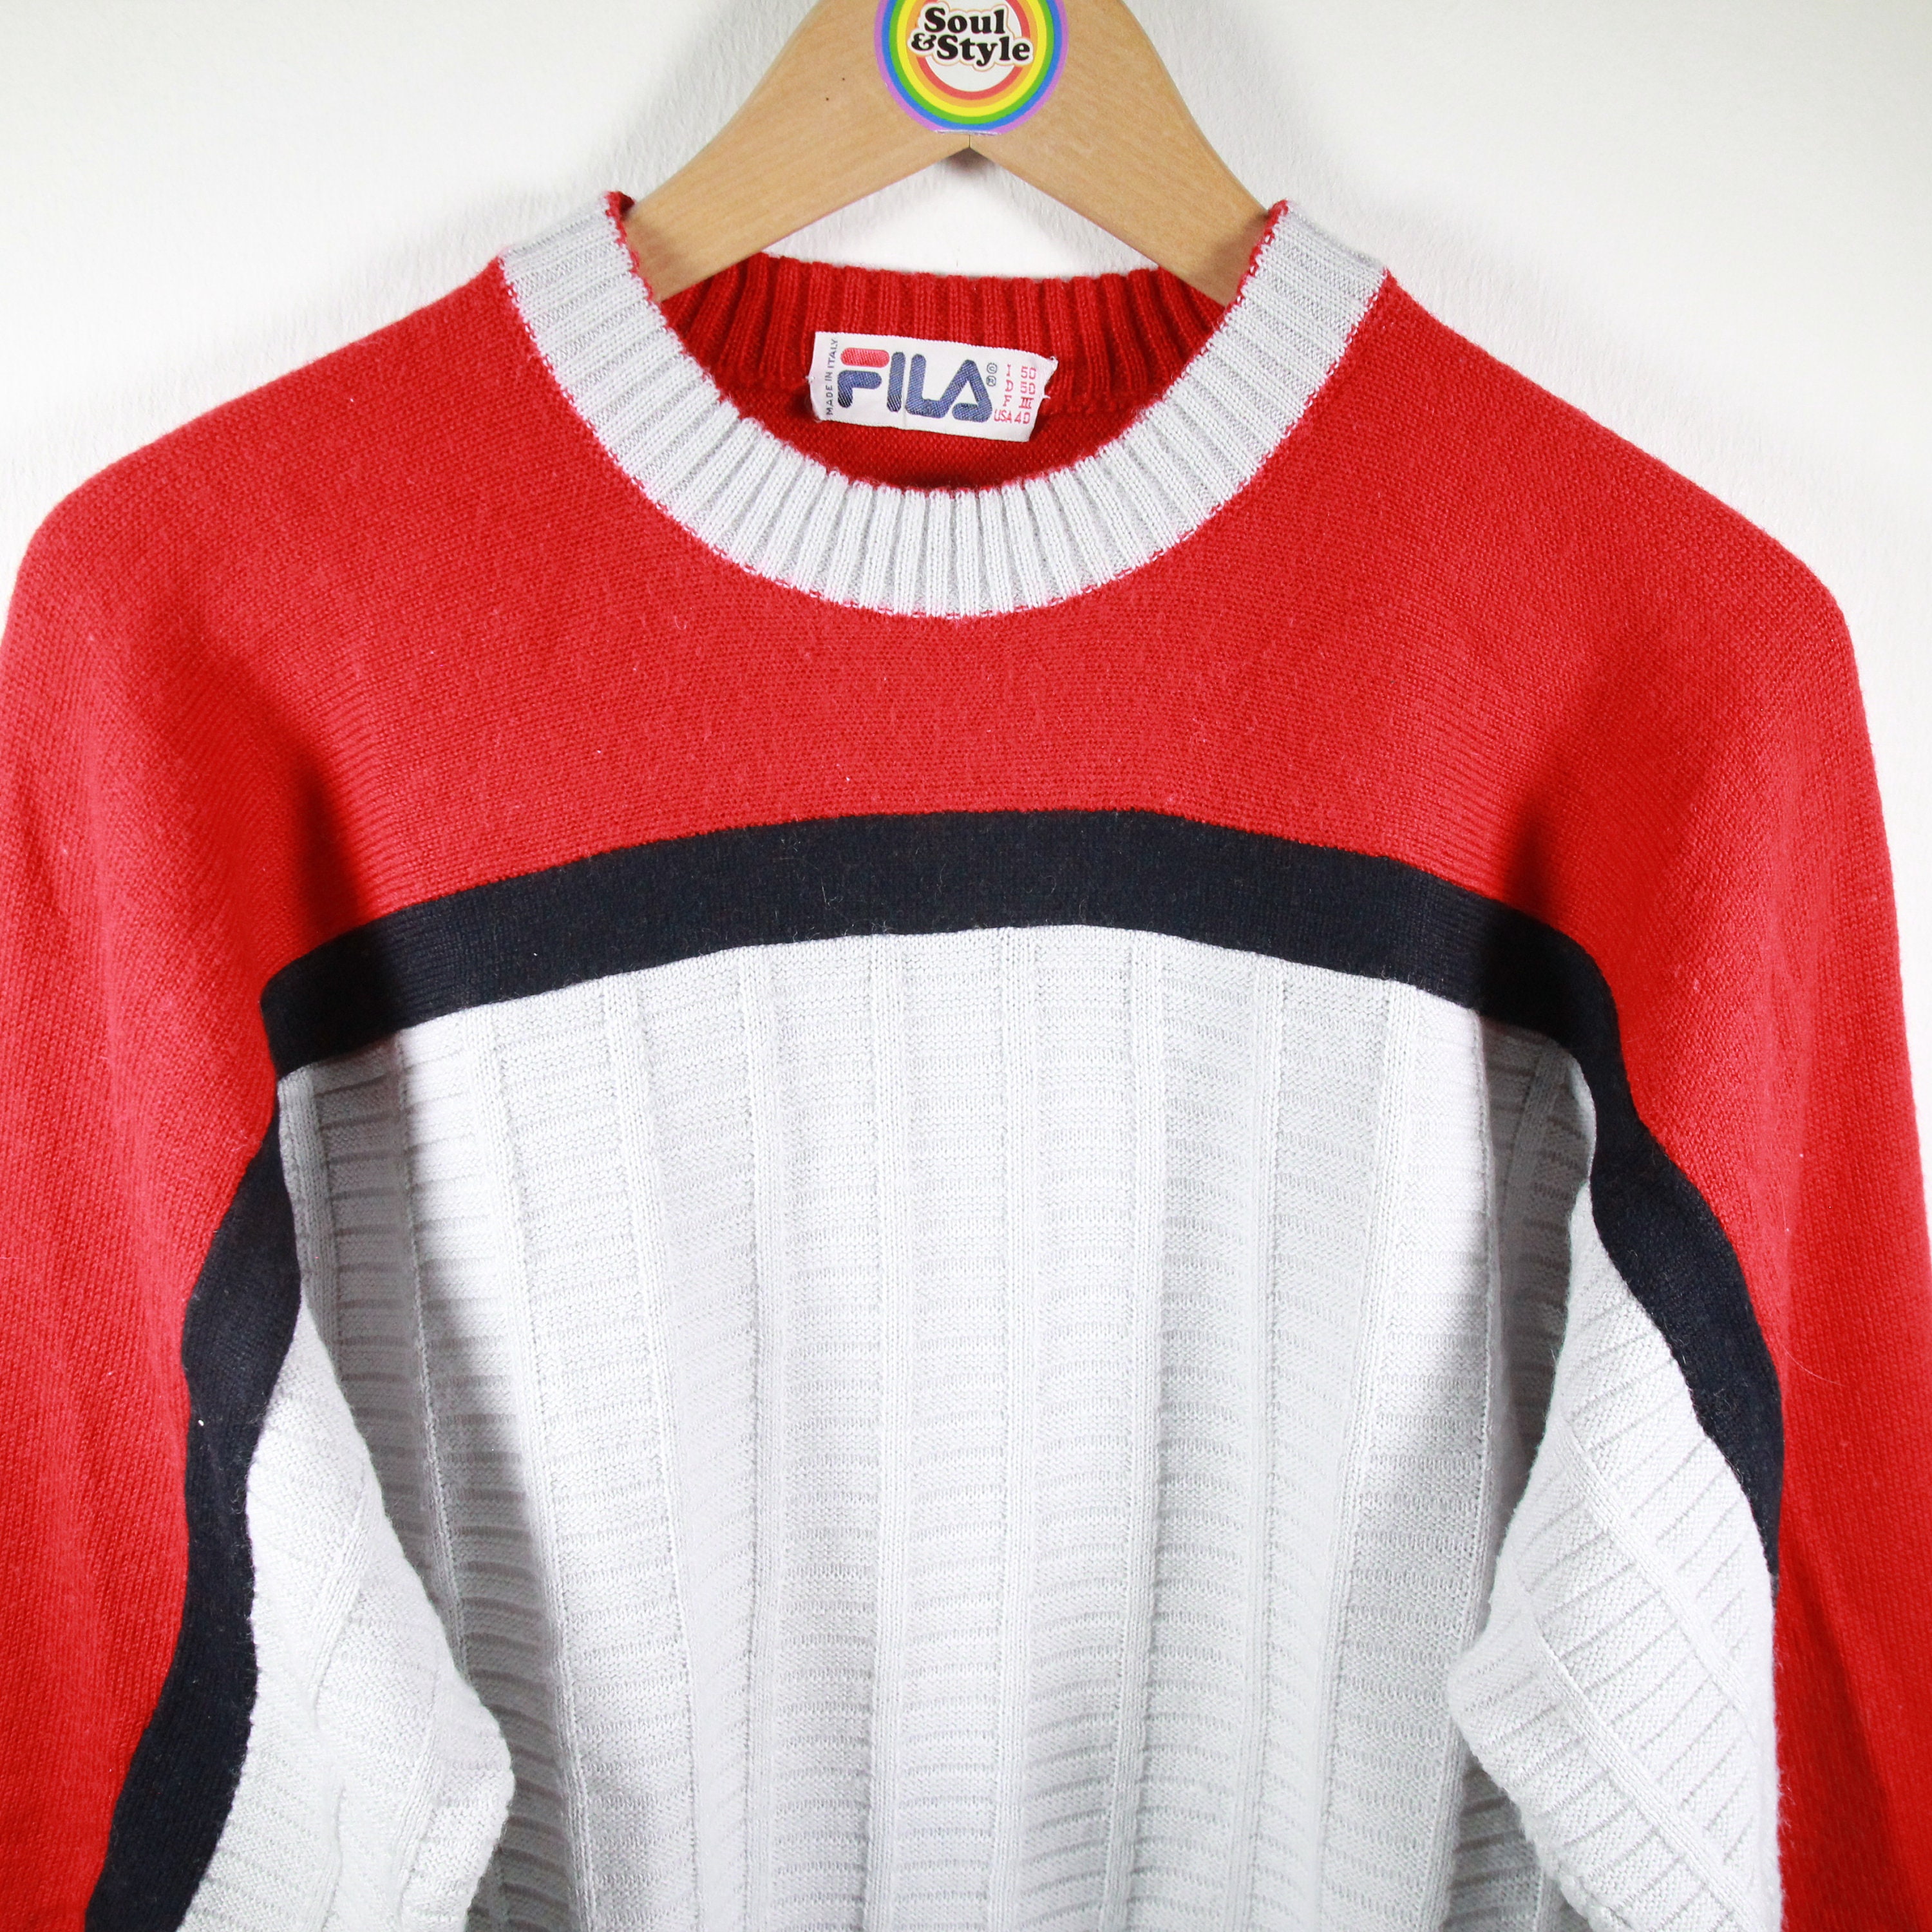 Vintage 80s Sweater Size S Fila - Etsy UK